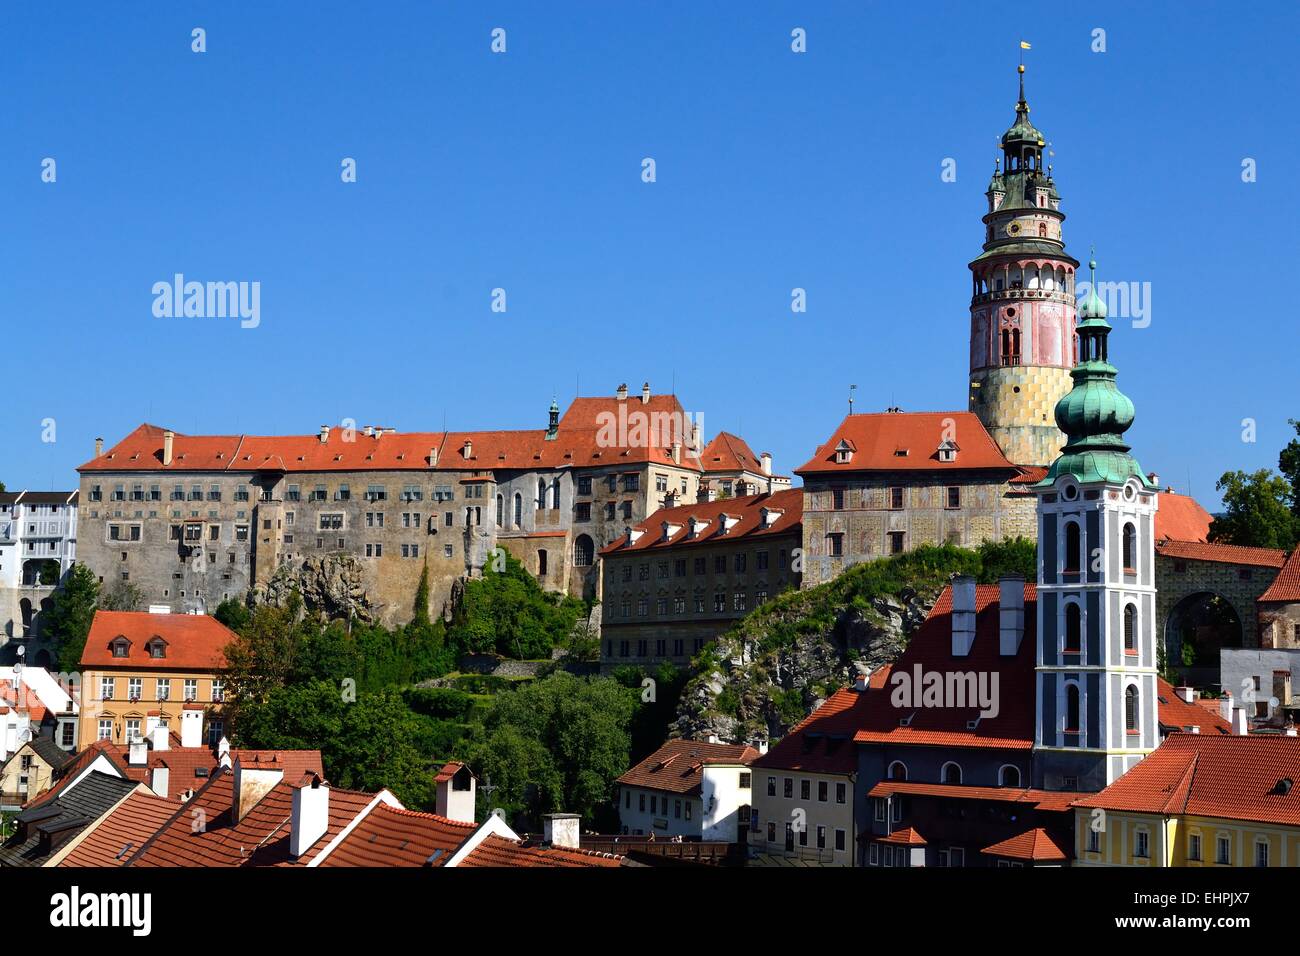 impressive castle in the Czech Republic Stock Photo